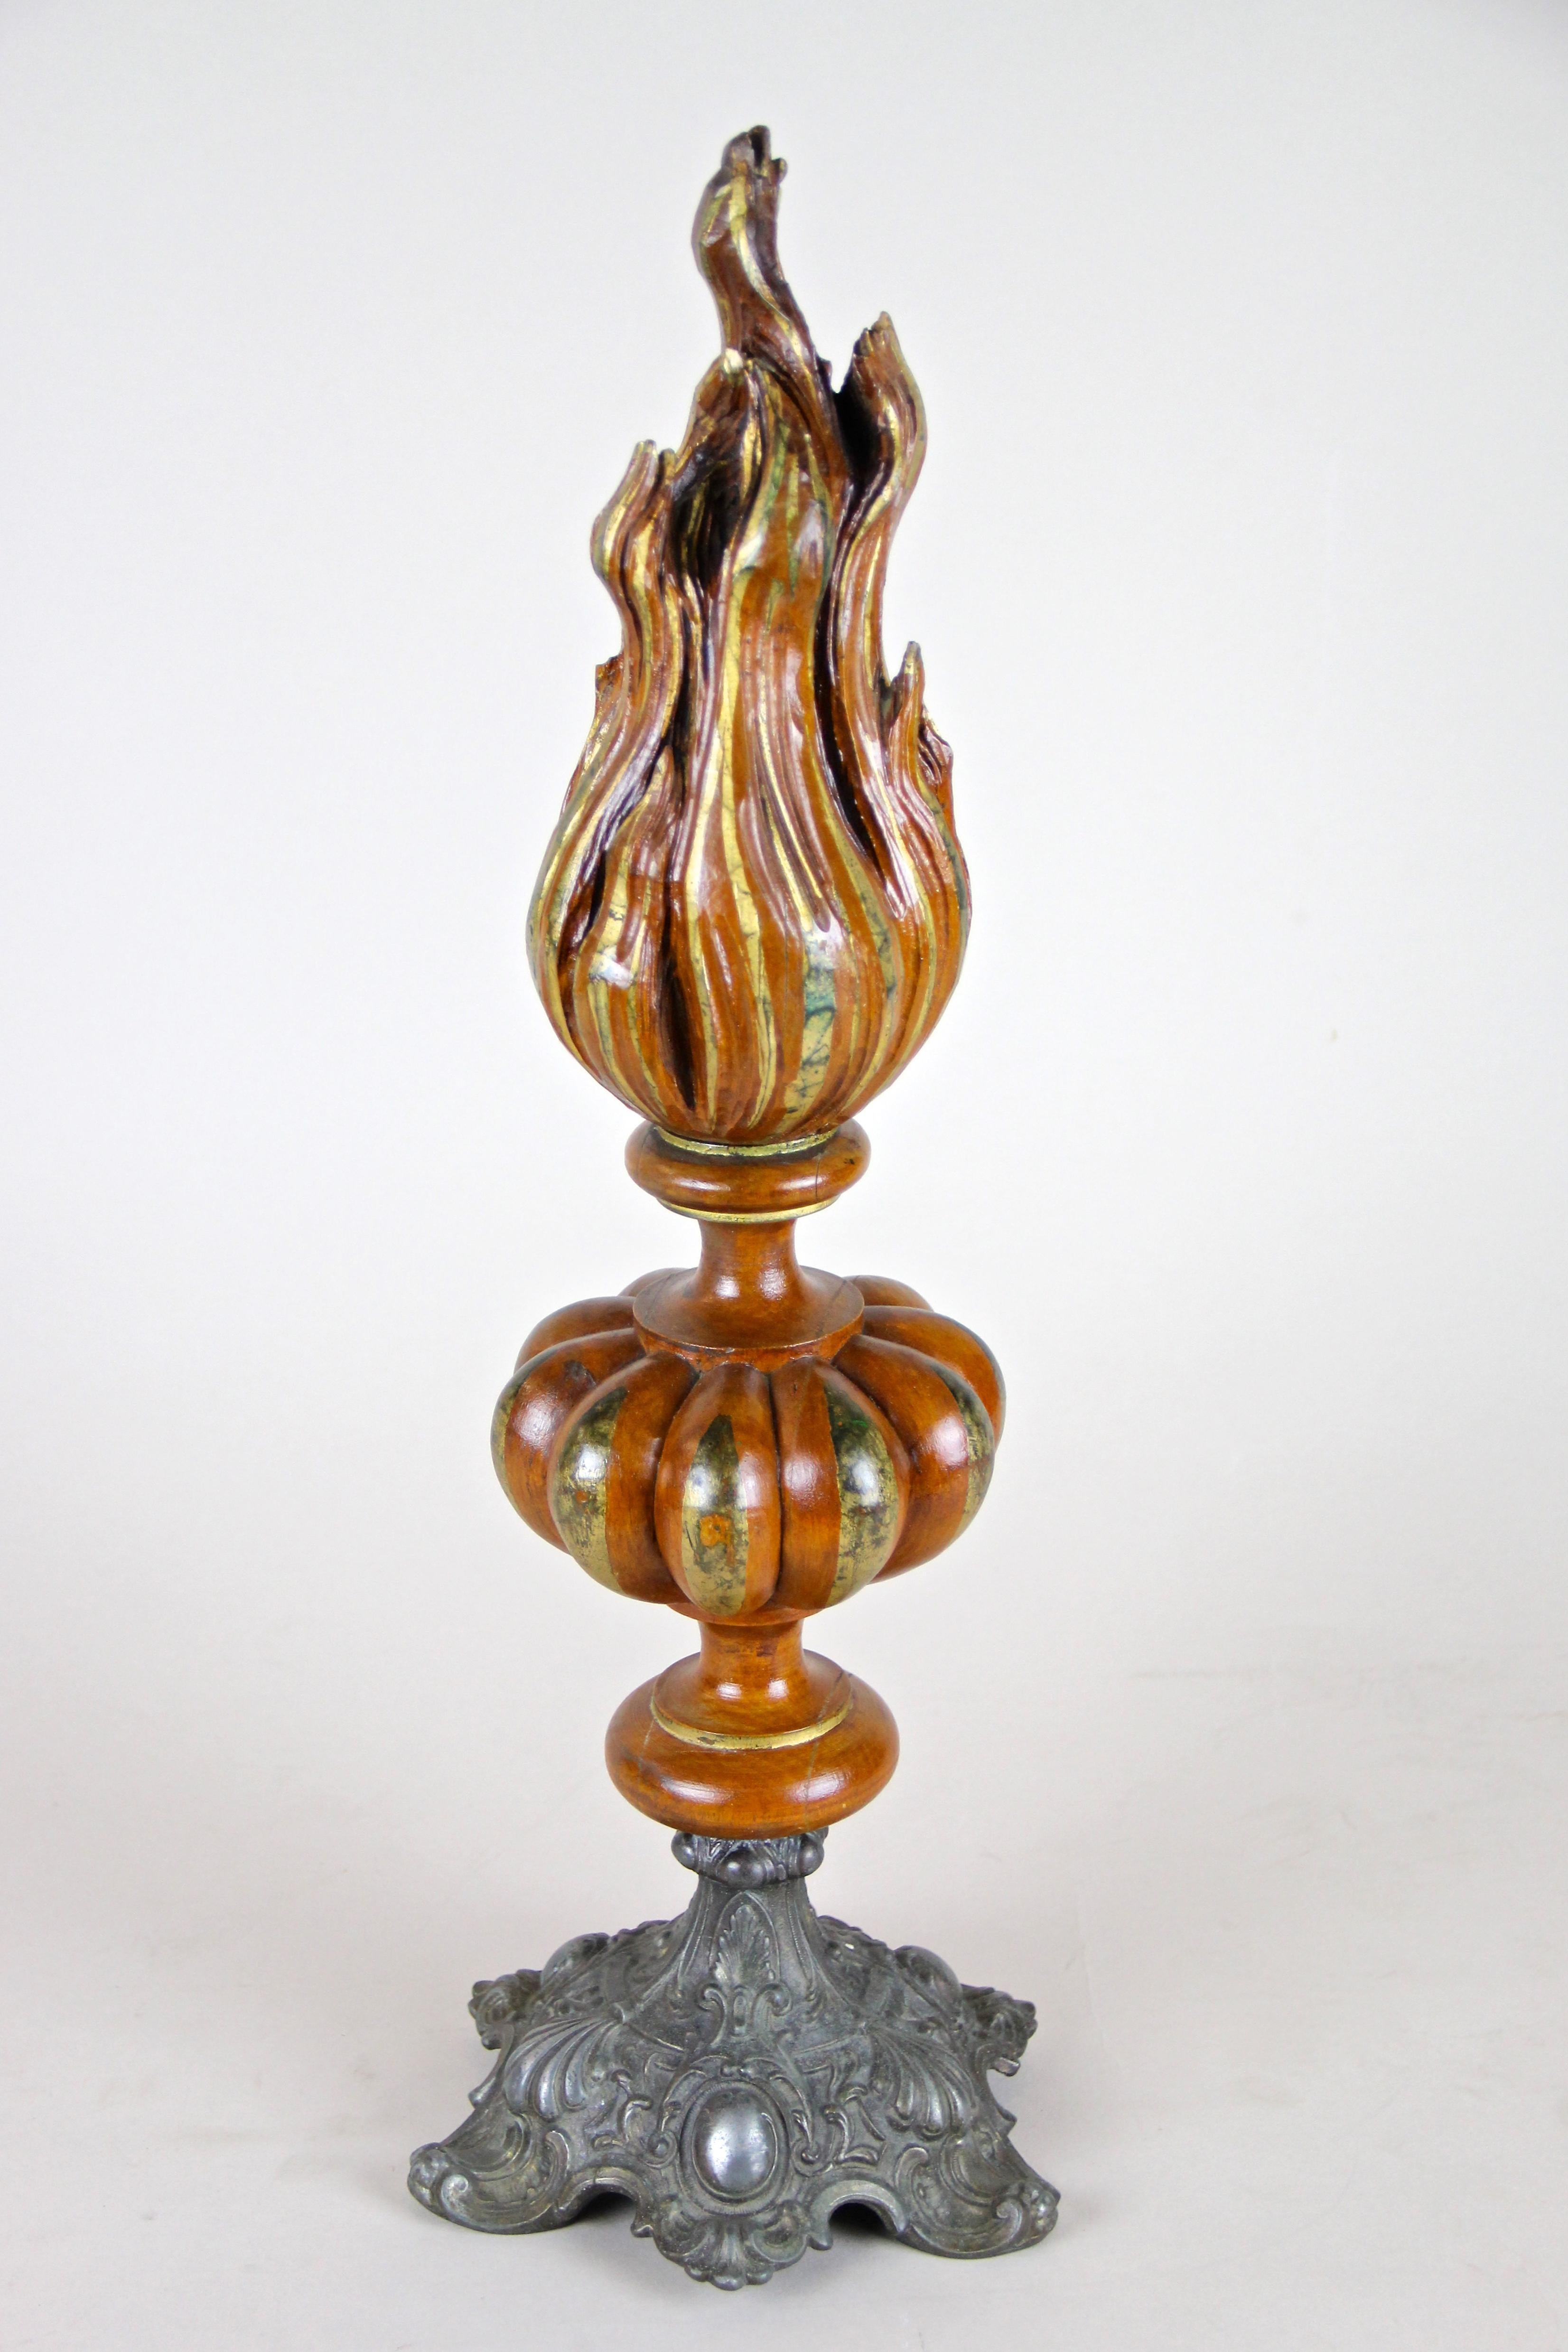 Einzigartige handgeschnitzte Holzfackel-Skulptur mit Flamme aus Österreich, um 1880. Dieses hochdekorative Einzelstück wurde kunstvoll aus Bassholz geschnitzt und zeigt eine fantastische Farbgebung in Hellbraun und Gold. Eine phantastische Skulptur,